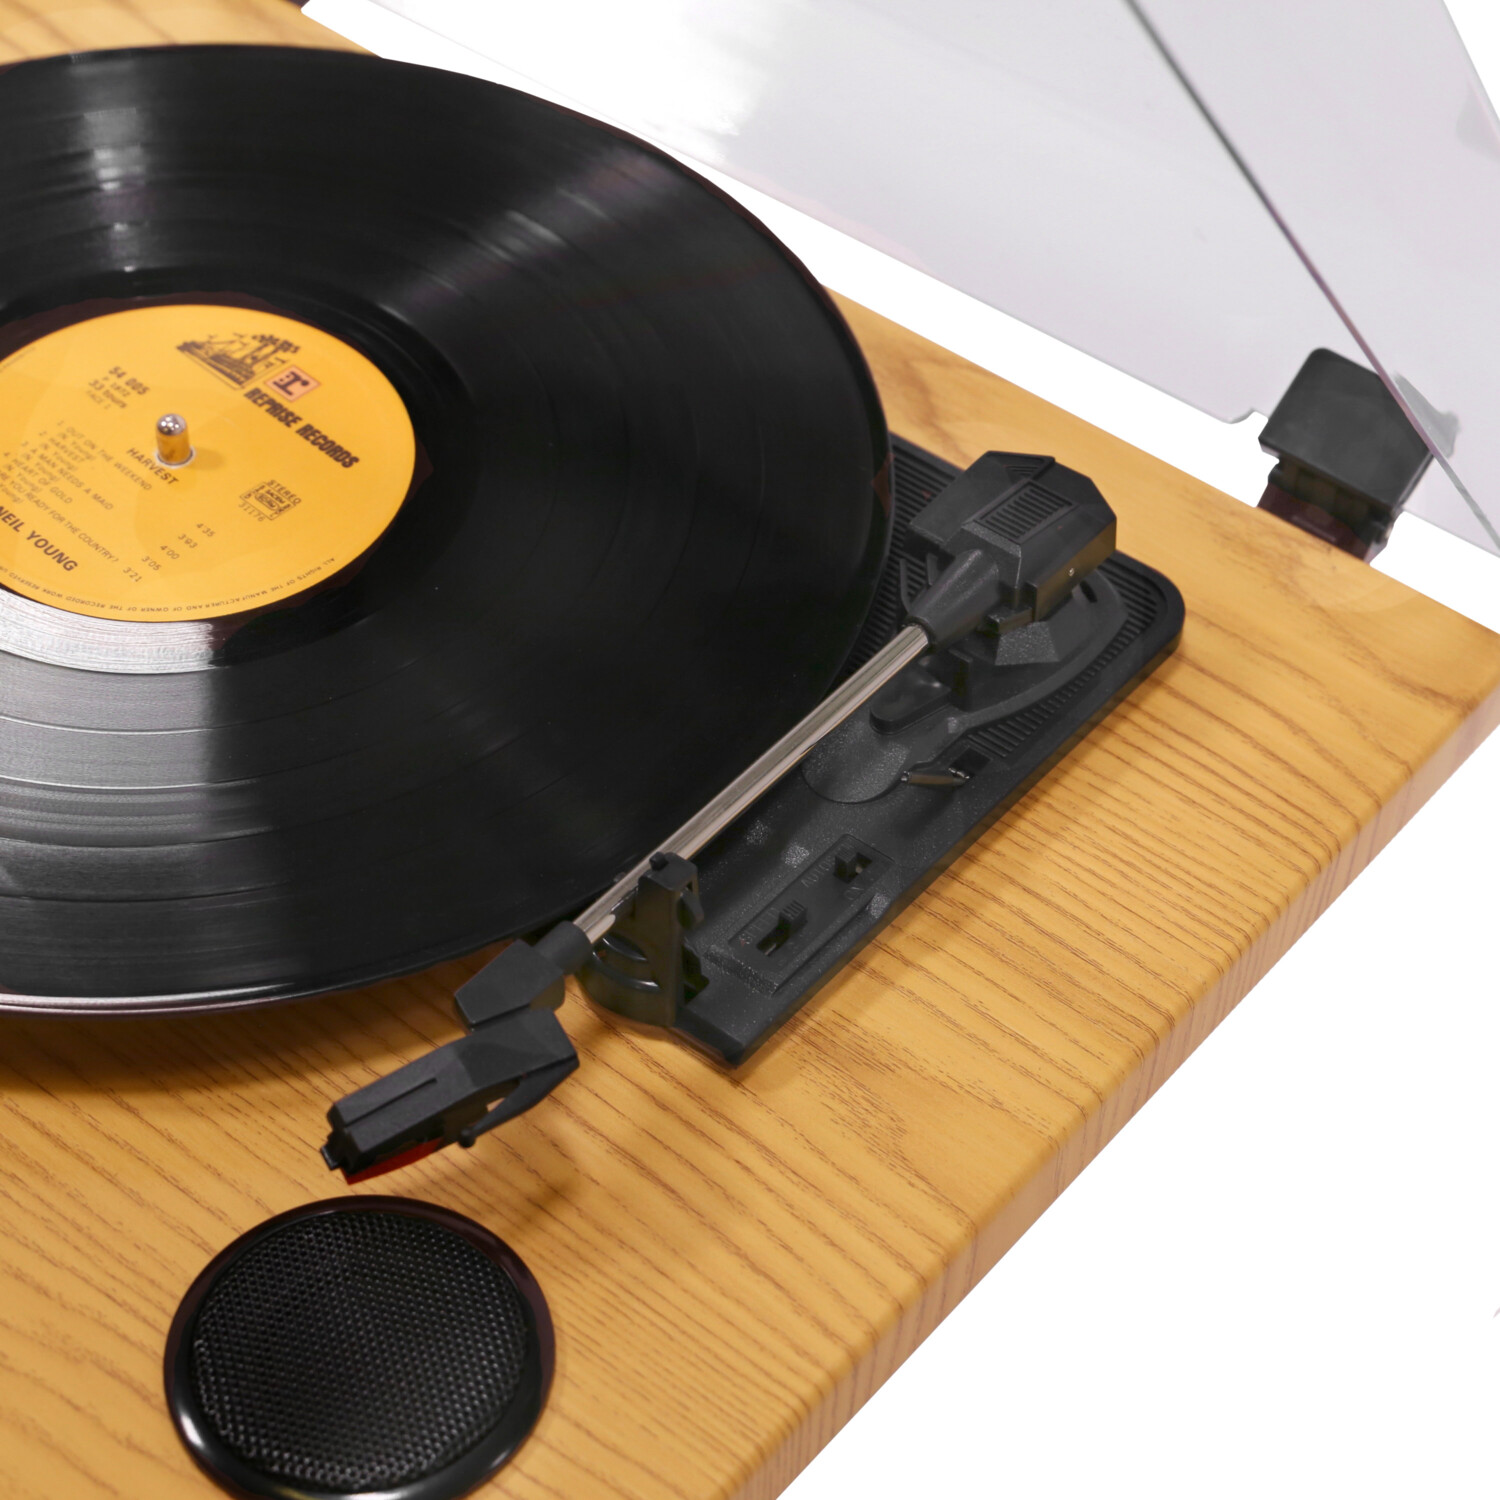 Stabilisateur Vinyle PST420, Accessoires pour platines vinyles